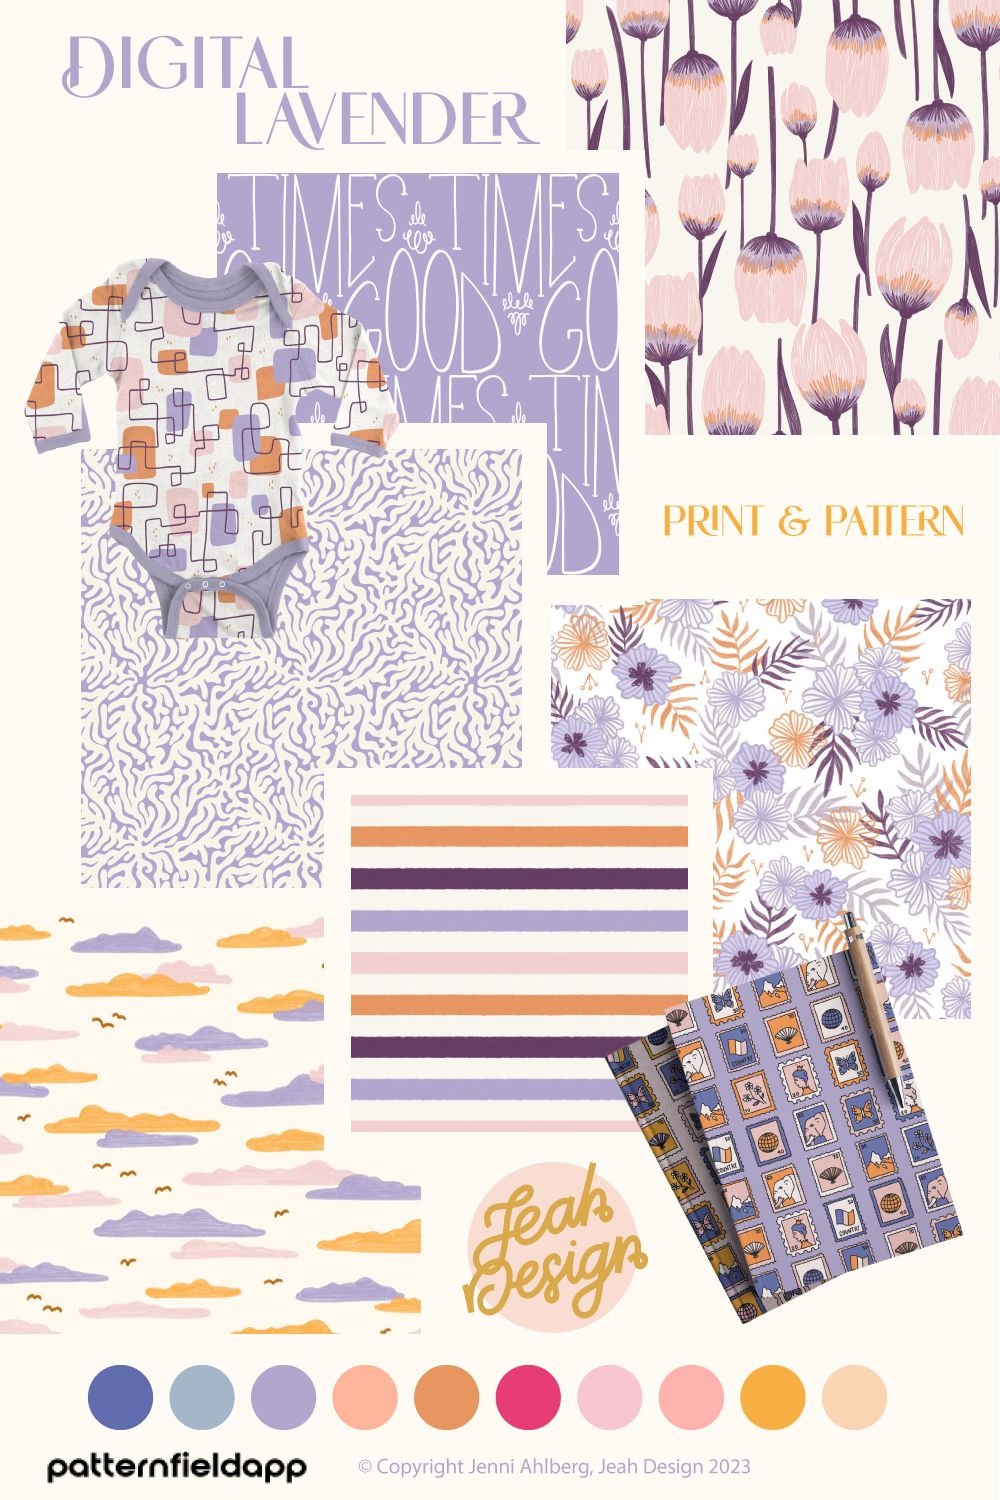 Jeah Design - Digital Lavender Repeat Patterns 599